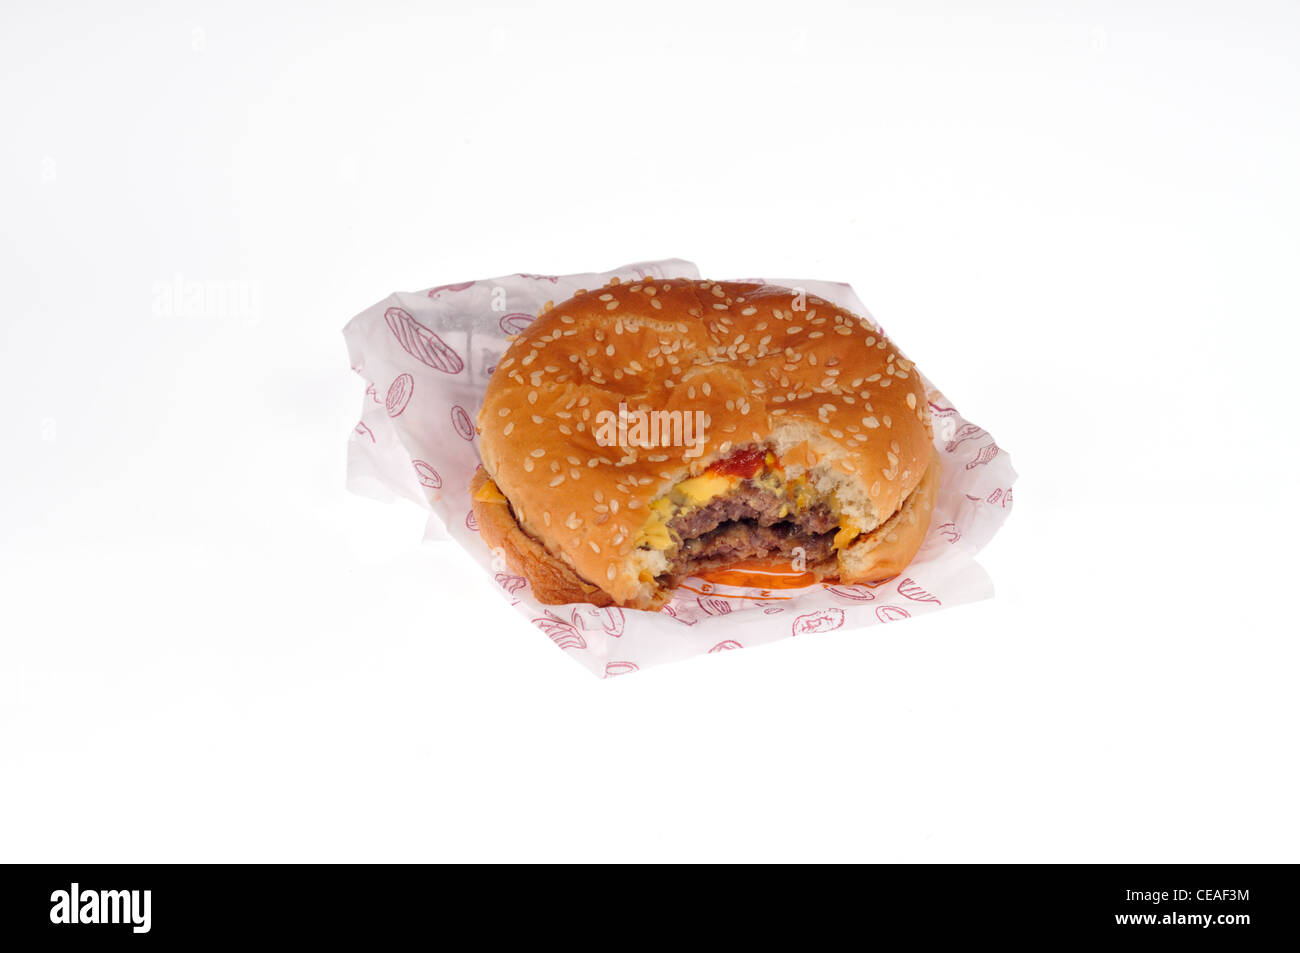 Burger King doppelten Cheeseburger mit Wrapper Verpackung auf weißem Hintergrund Ausschnitt. Stockfoto